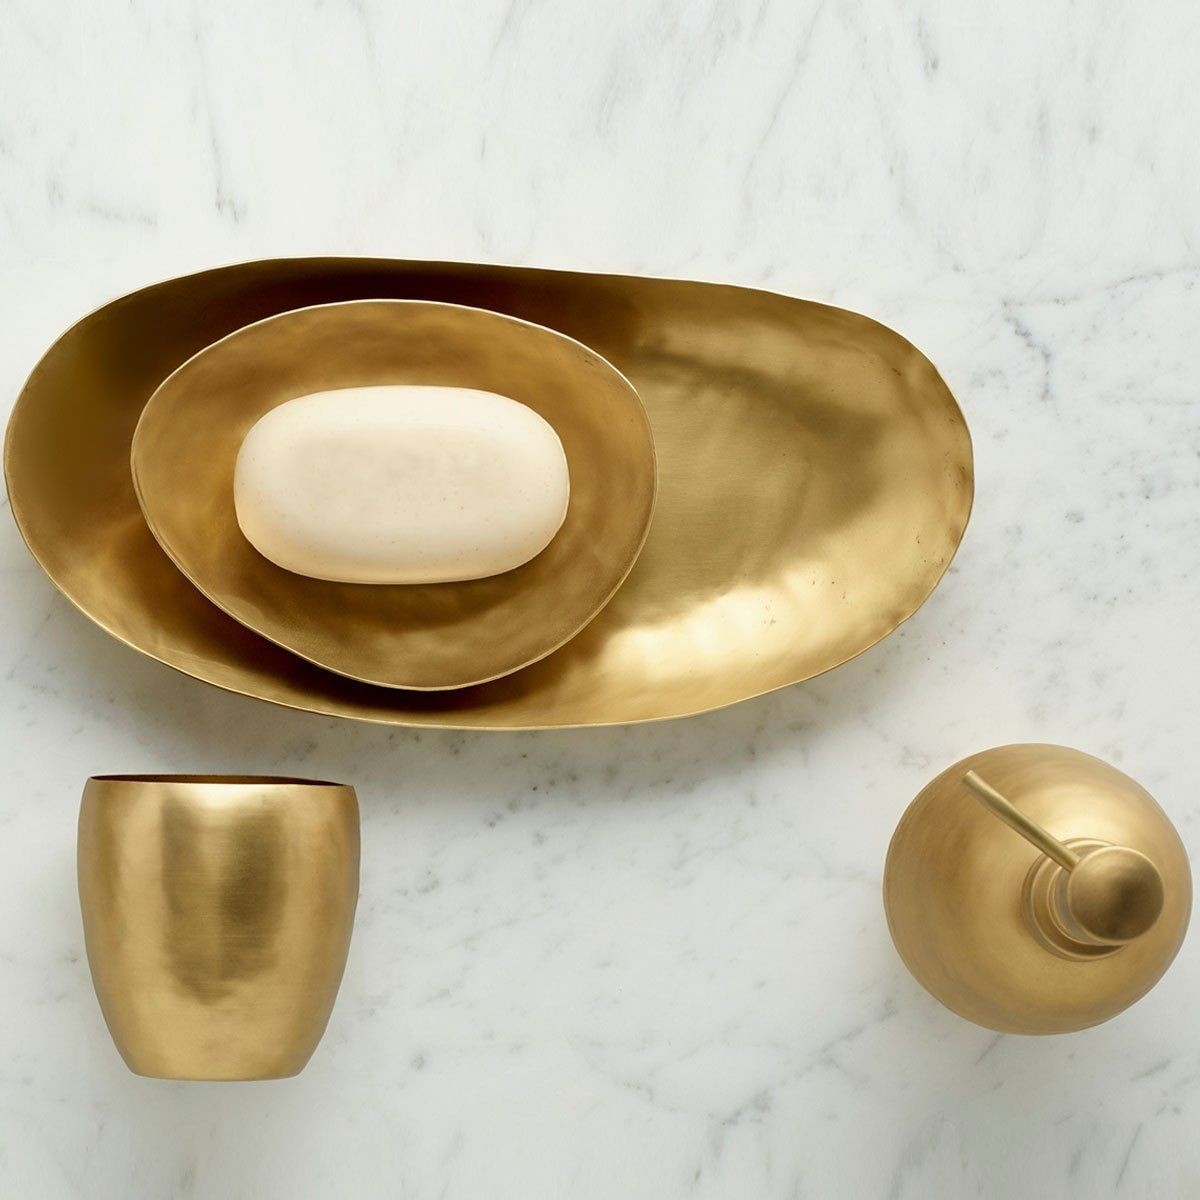 Nile gold bath accessories bagno